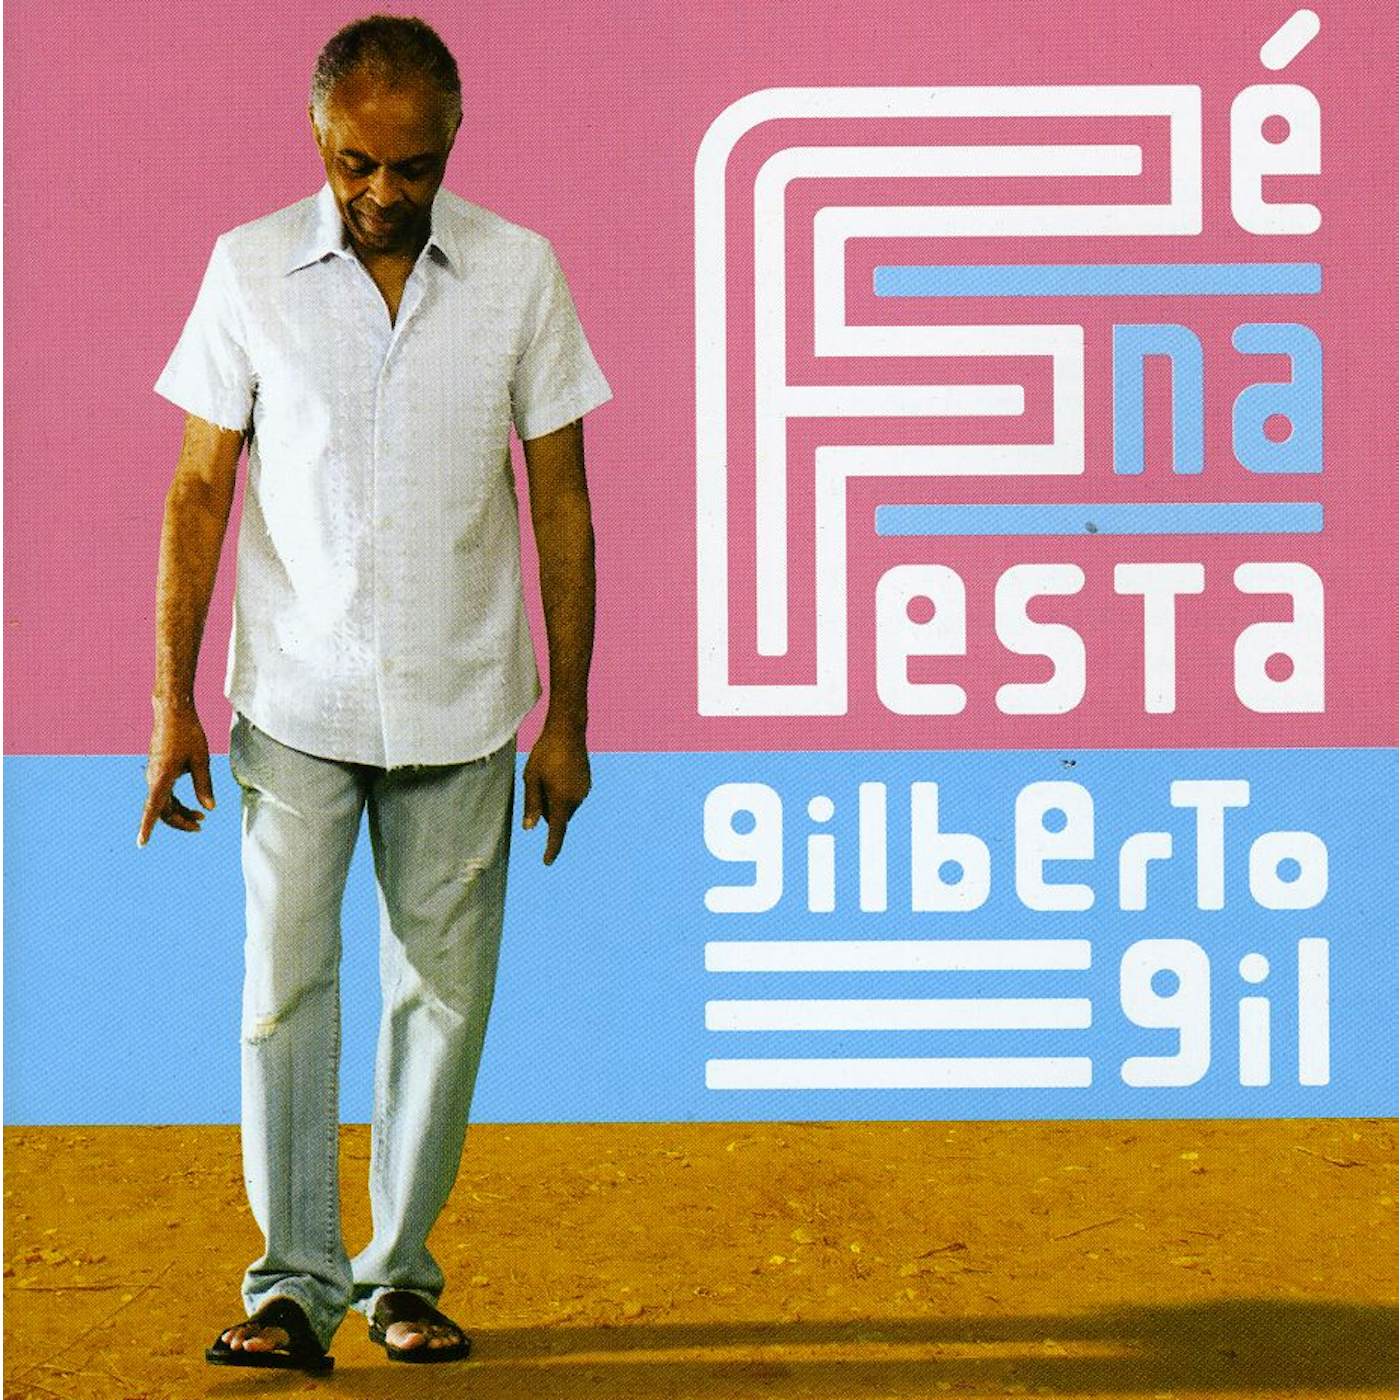 Gilberto Gil FE NA FESTA CD